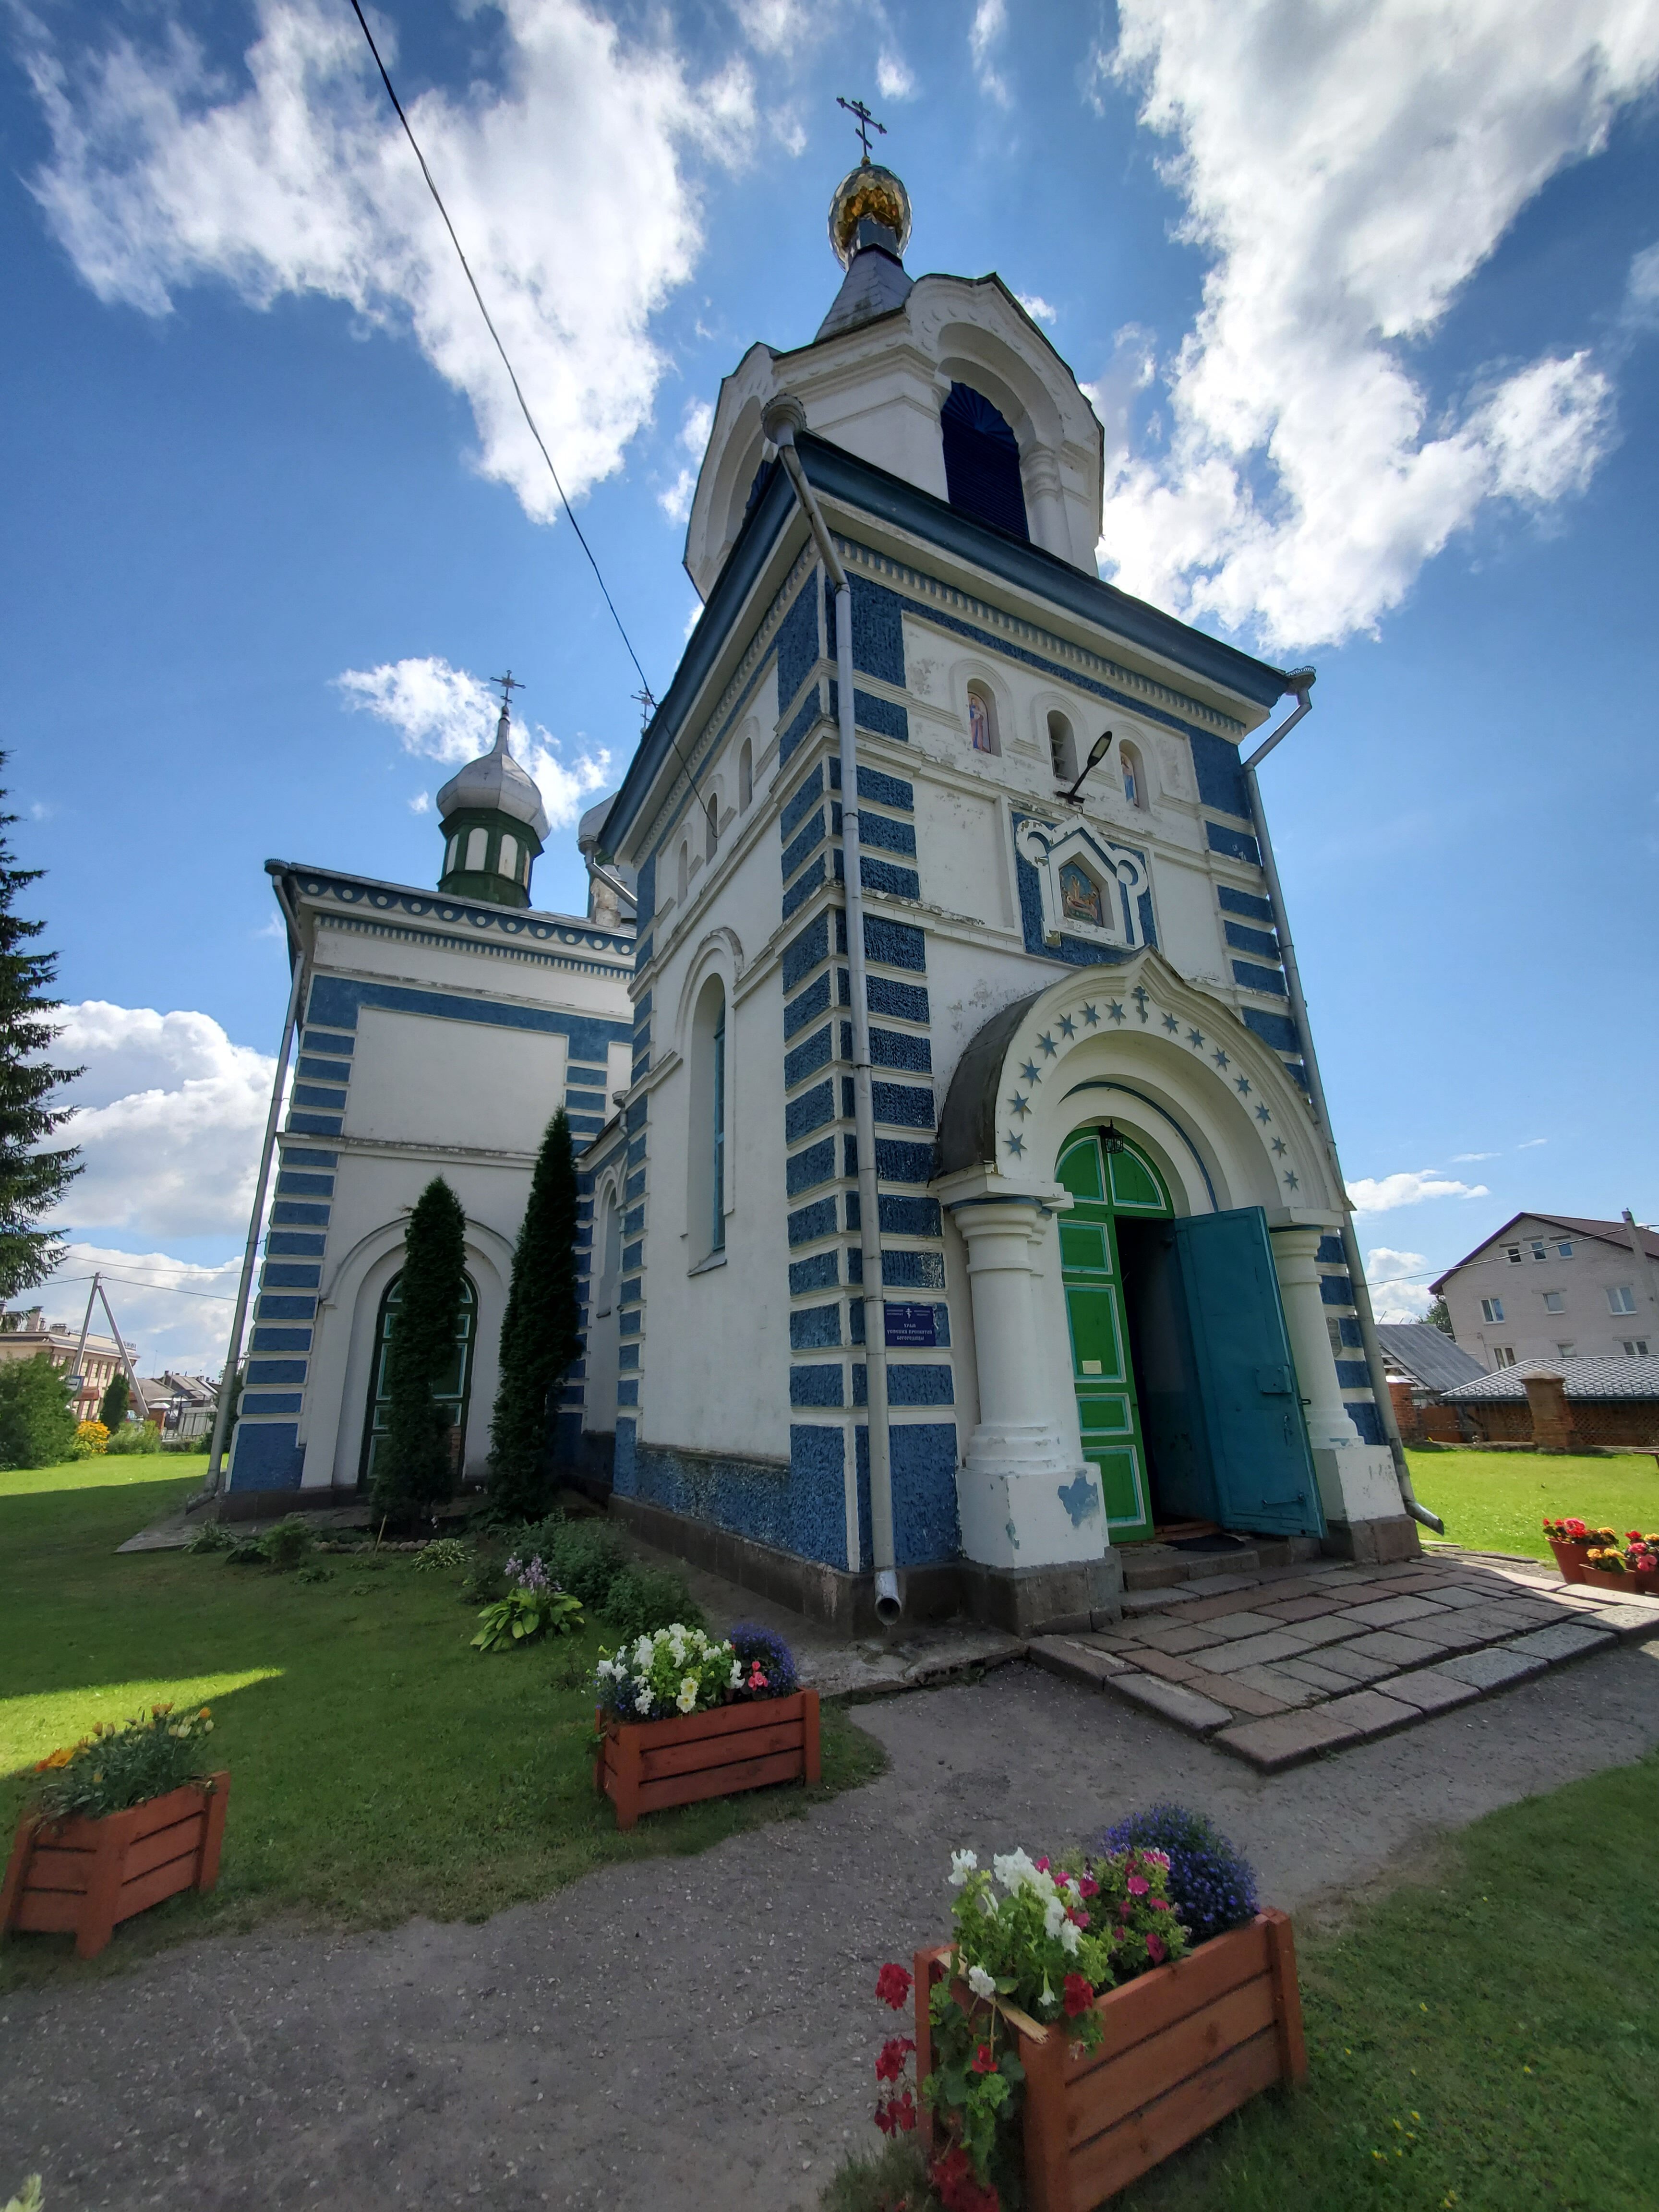 20200801 114423 rotated - Церковь Успения Пресвятой Богородицы в Браславе